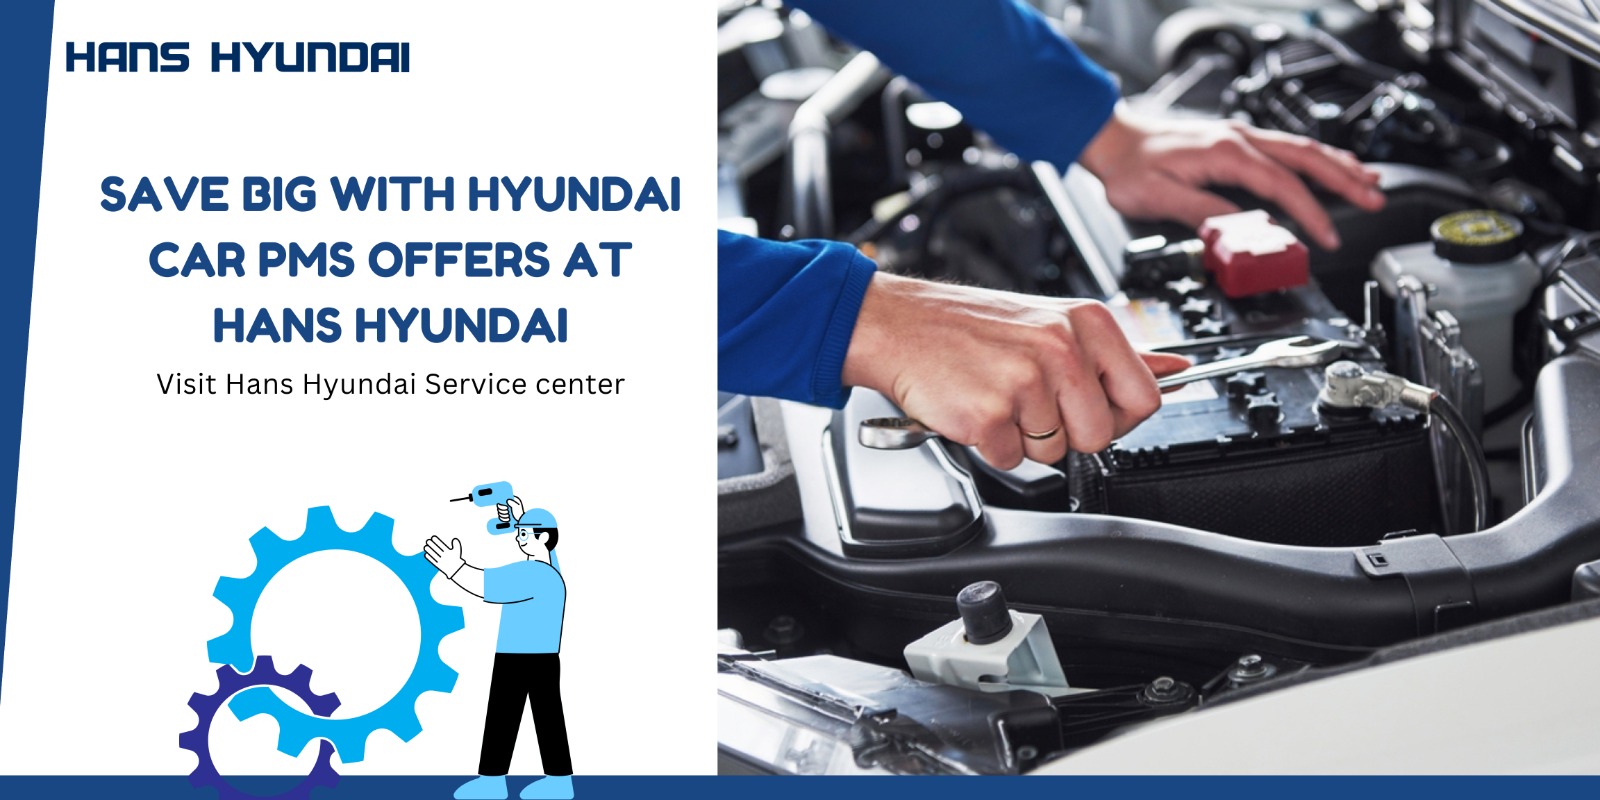 Hyundai car service